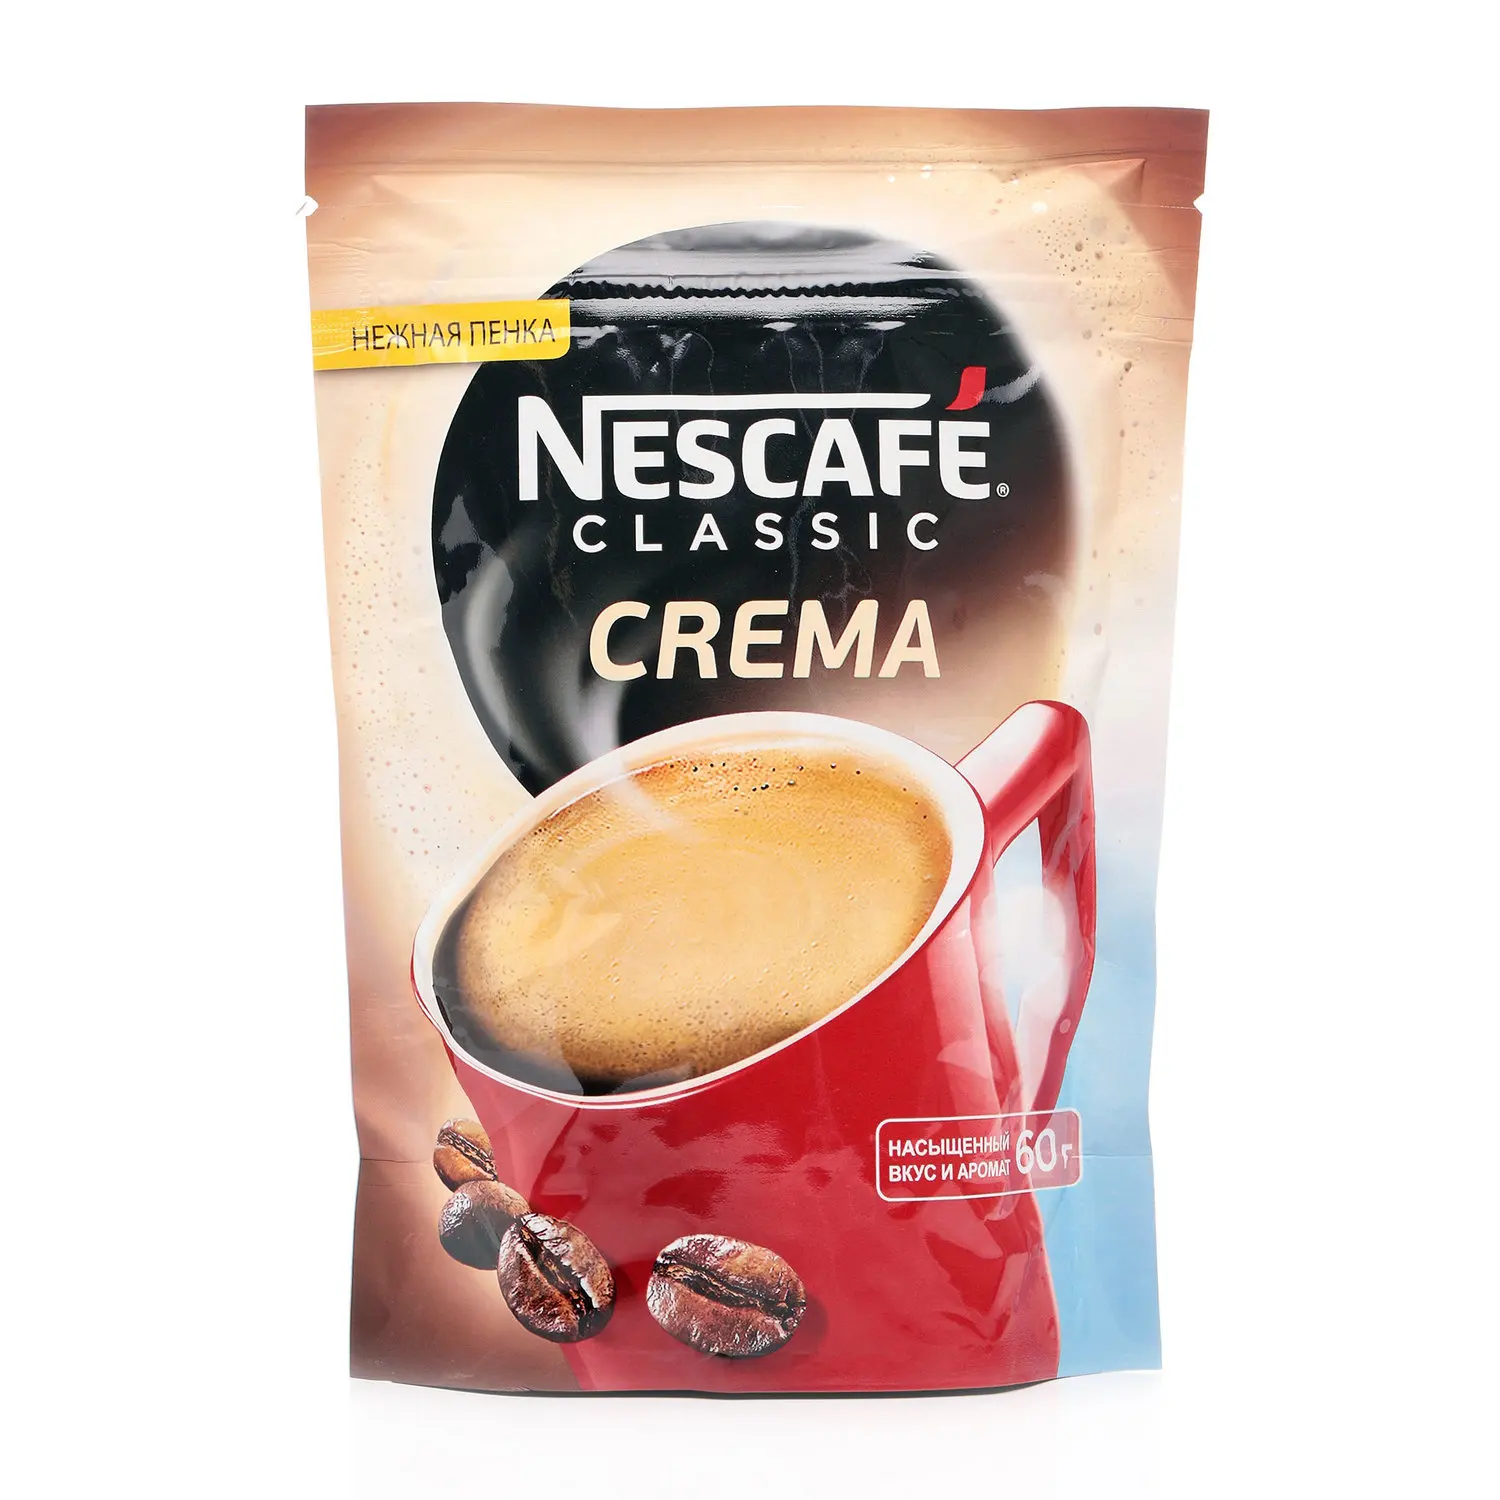 Нескафе крема купить. Нескафе крема в мягкой упаковке. Кофе Нескафе крема 120 гр. Nescafe crema в пачке. Нескафе 1996.